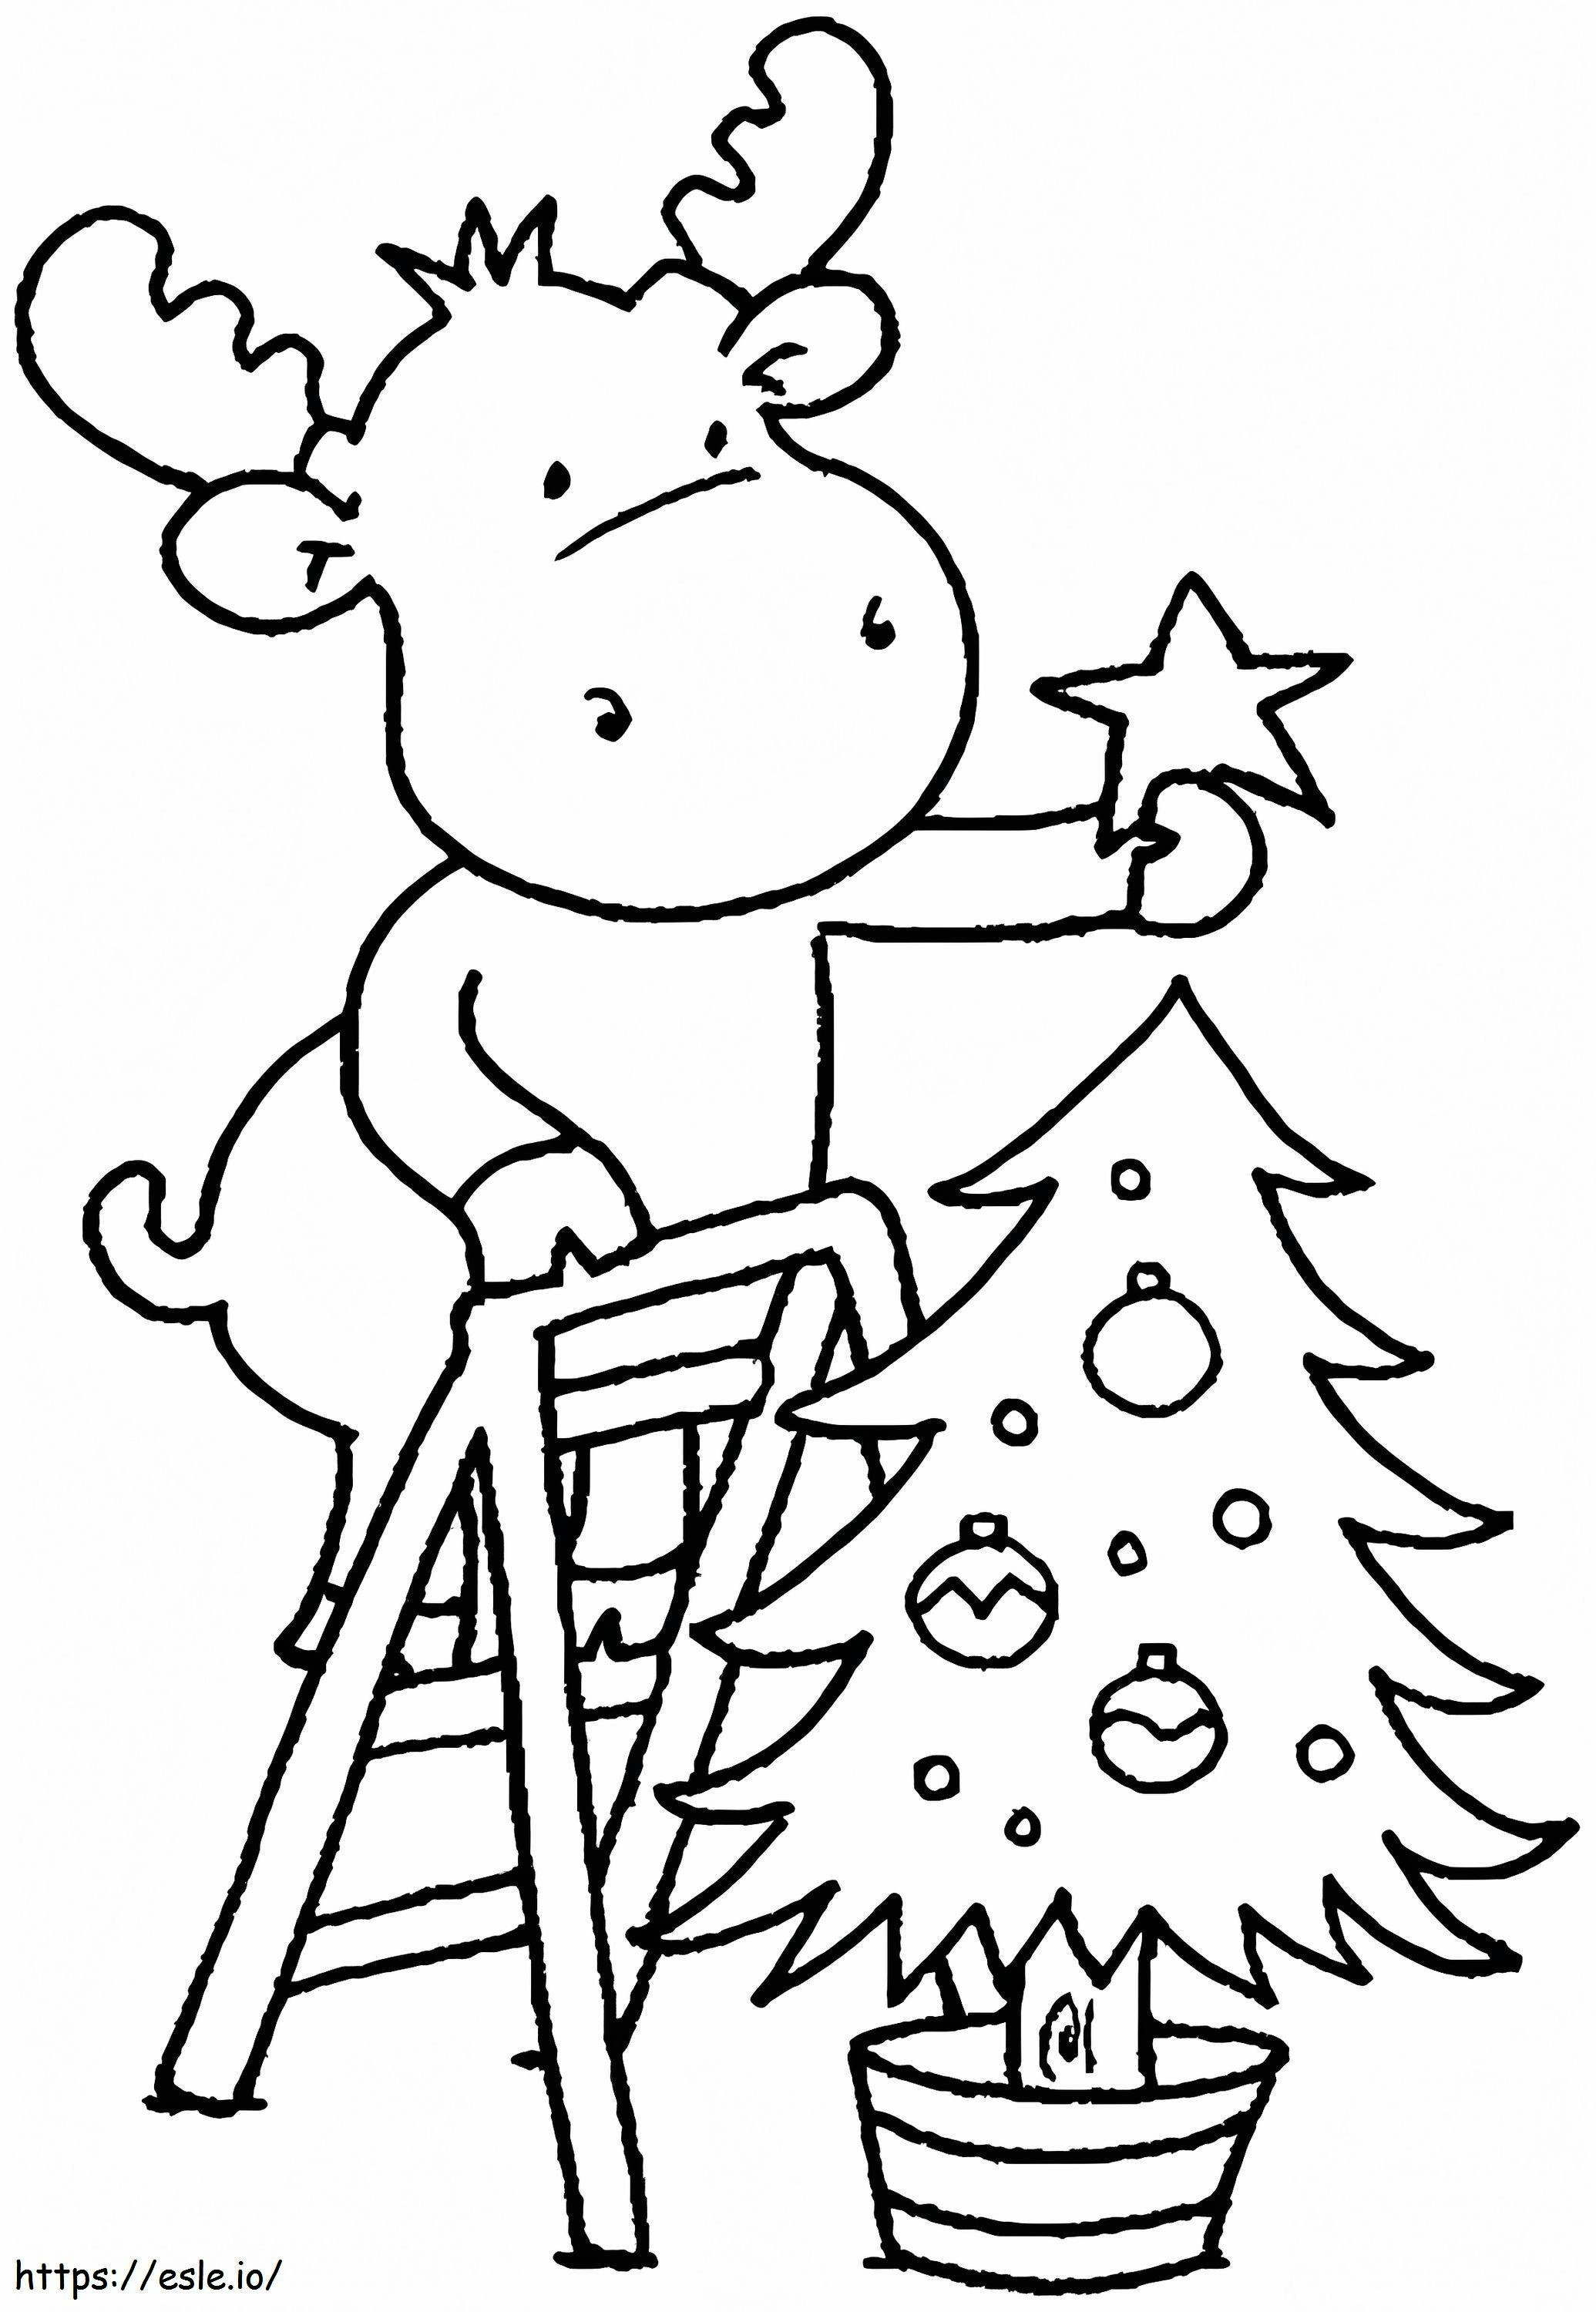 1541725061_Coloring Noel Sayfaları Okul Öncesi Çocuklar İçin Küçük Çocuklar İçin Ücretsiz Boyama Noel Boyama Resimleri boyama